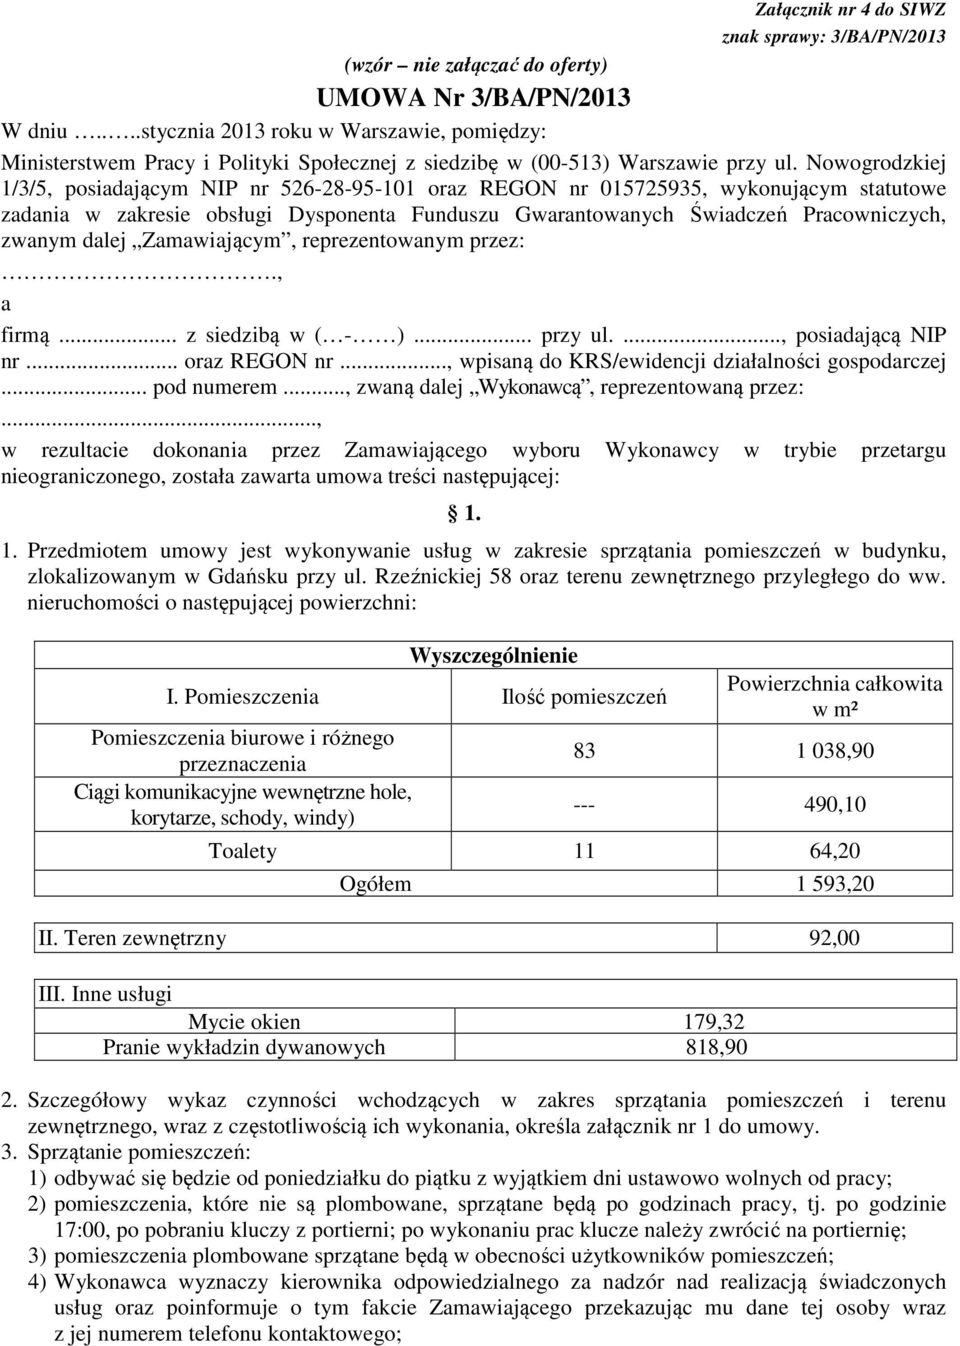 Nowogrodzkiej 1/3/5, posiadającym NIP nr 526-28-95-101 oraz REGON nr 015725935, wykonującym statutowe zadania w zakresie obsługi Dysponenta Funduszu Gwarantowanych Świadczeń Pracowniczych, zwanym